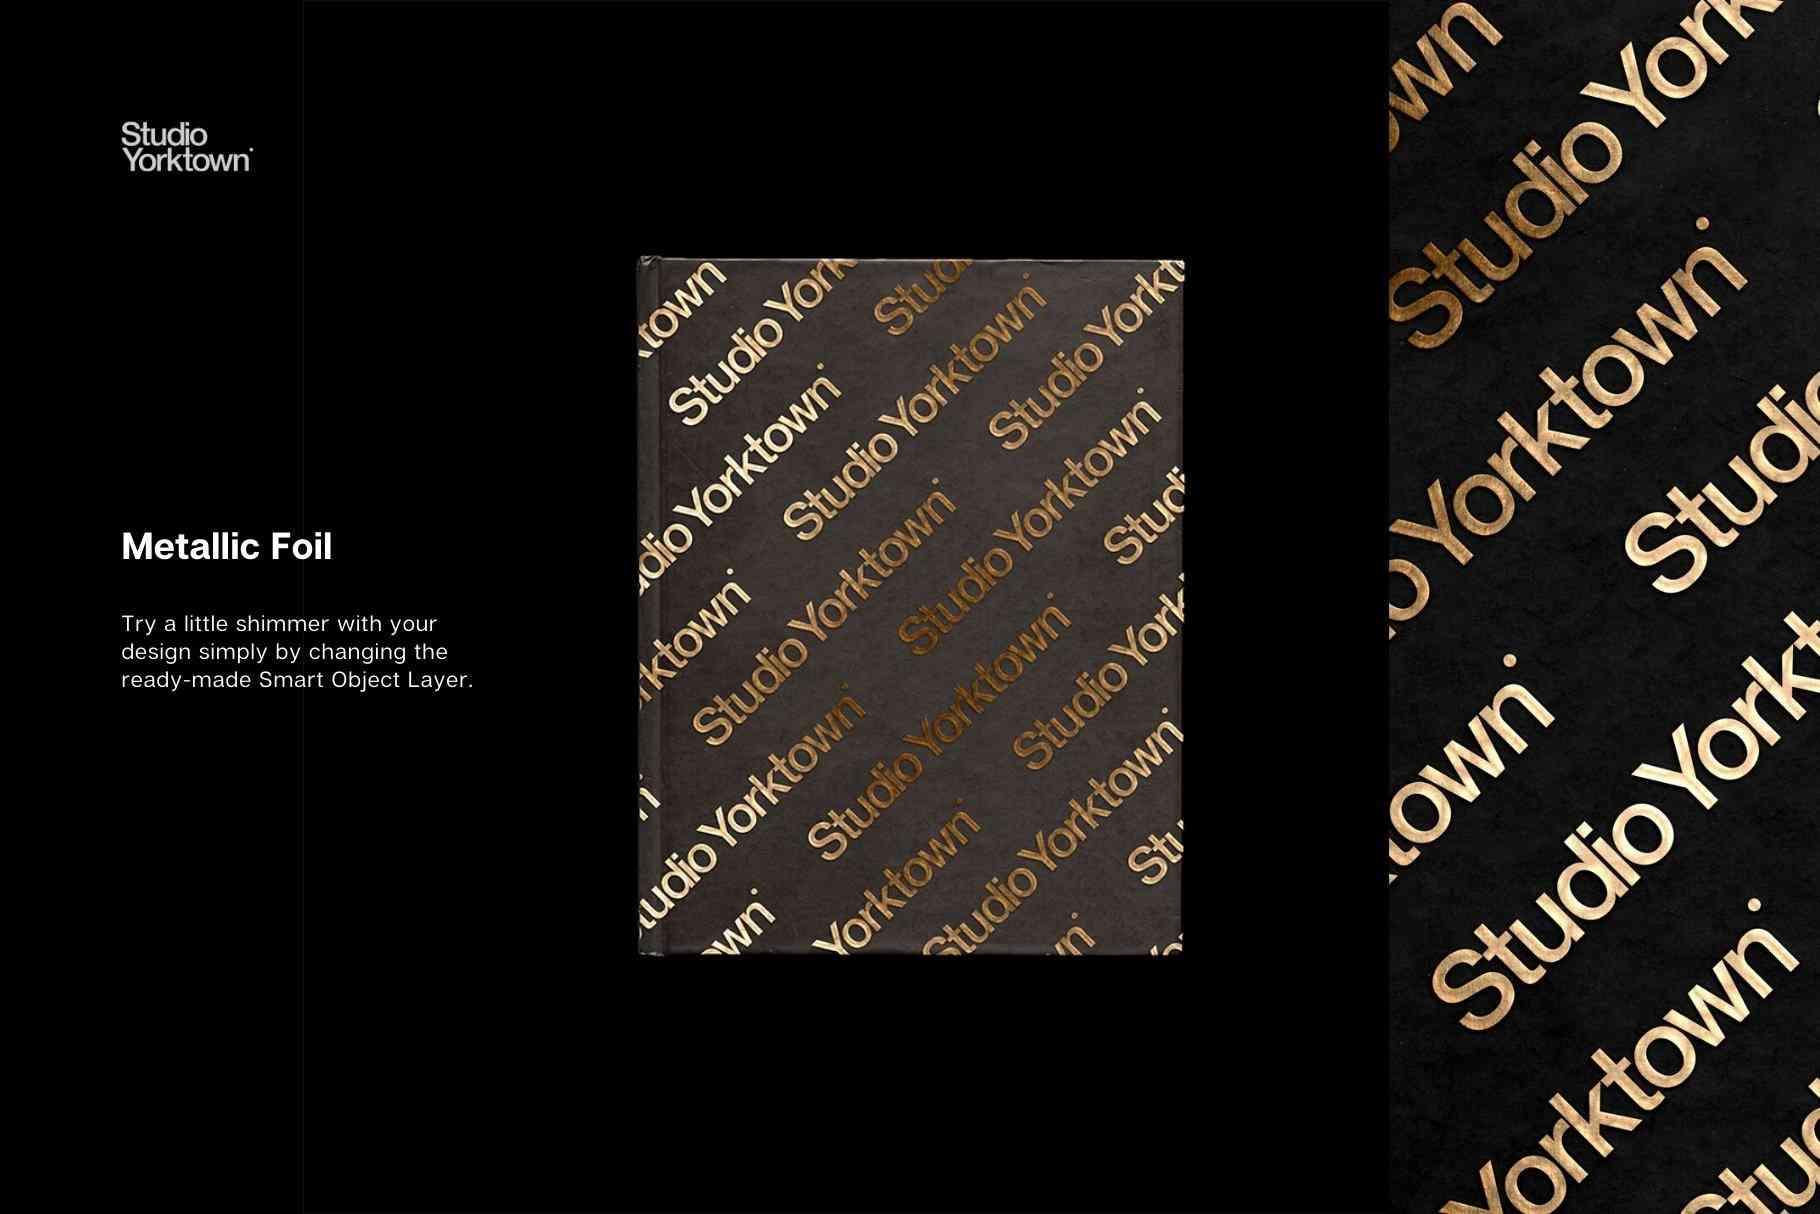 硬面精装画册书籍装帧工艺封面设计PSD智能贴图样机模板 Honbako Book Design Mockup Template